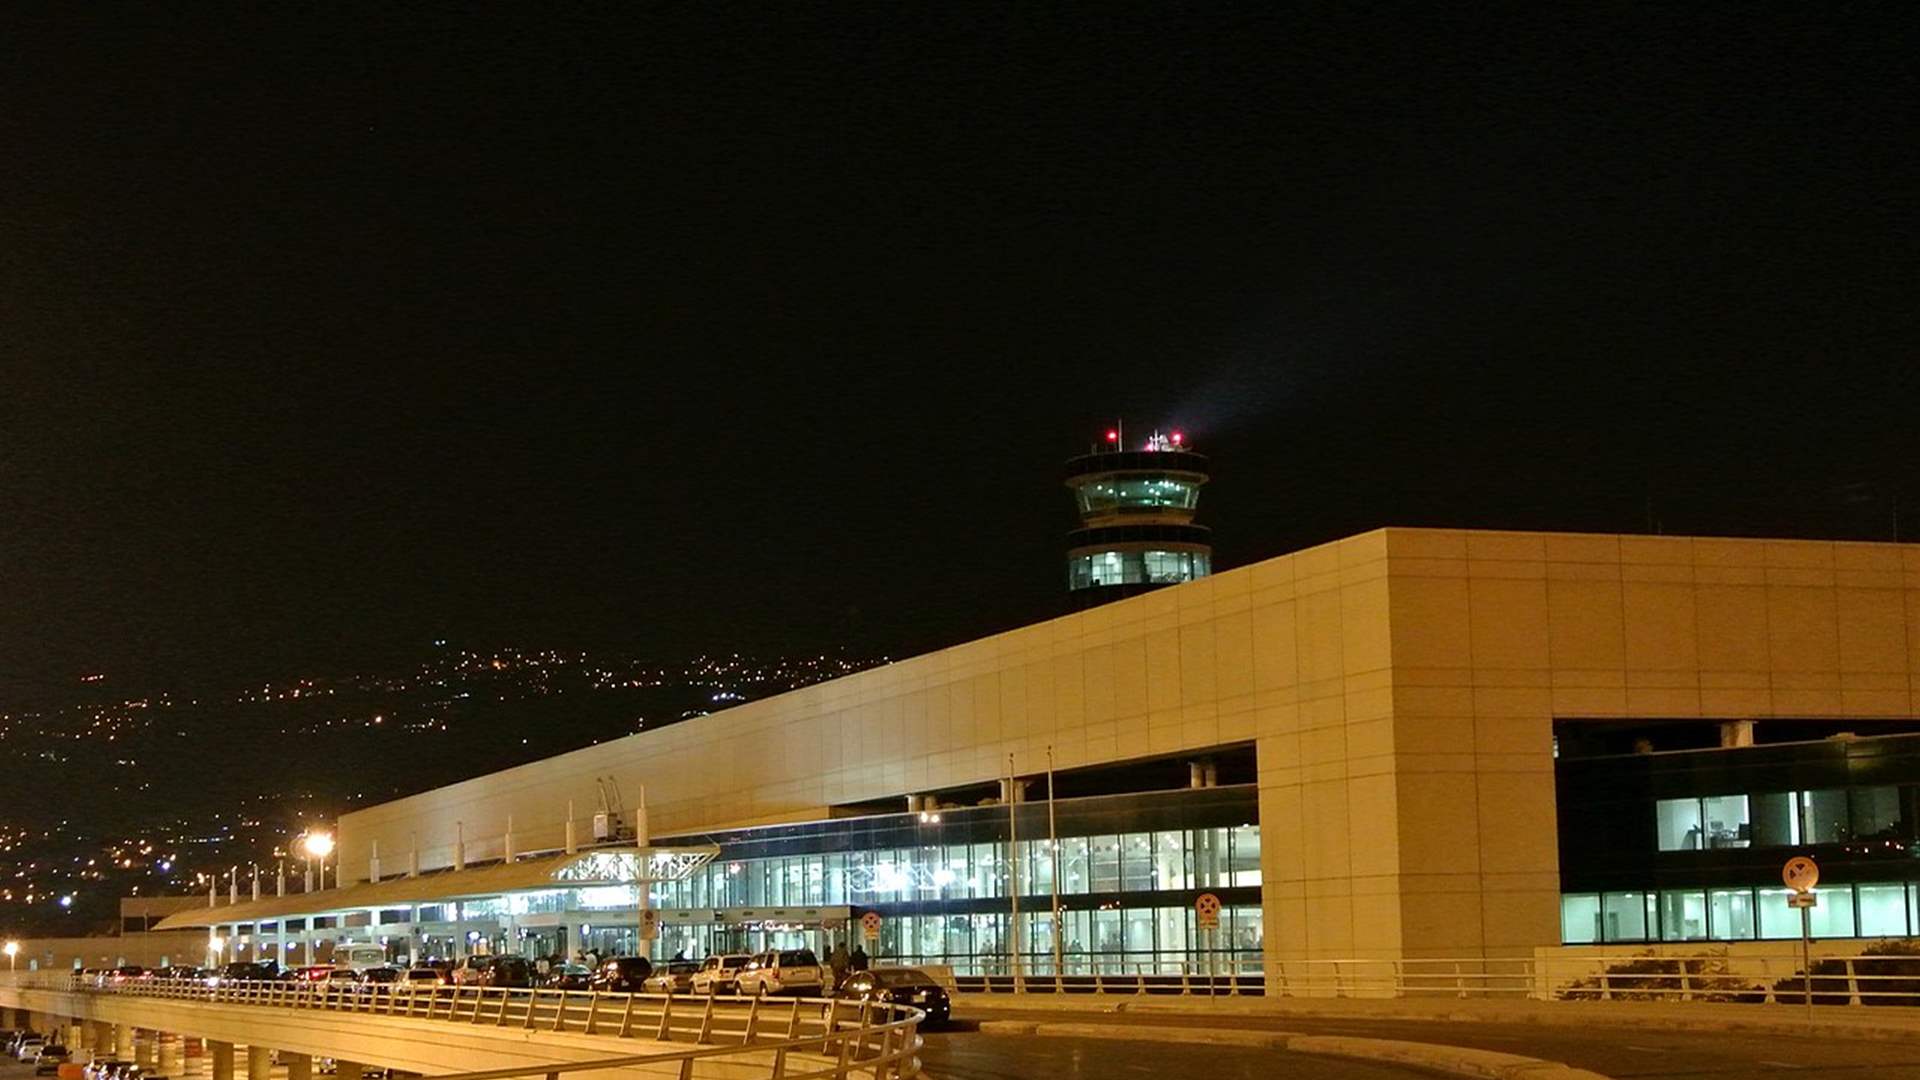 المطار وقطاعات اخرى وسط ازمة الكهرباء... حلول قد يستفيد منها لبنان بيئيا واقتصاديا